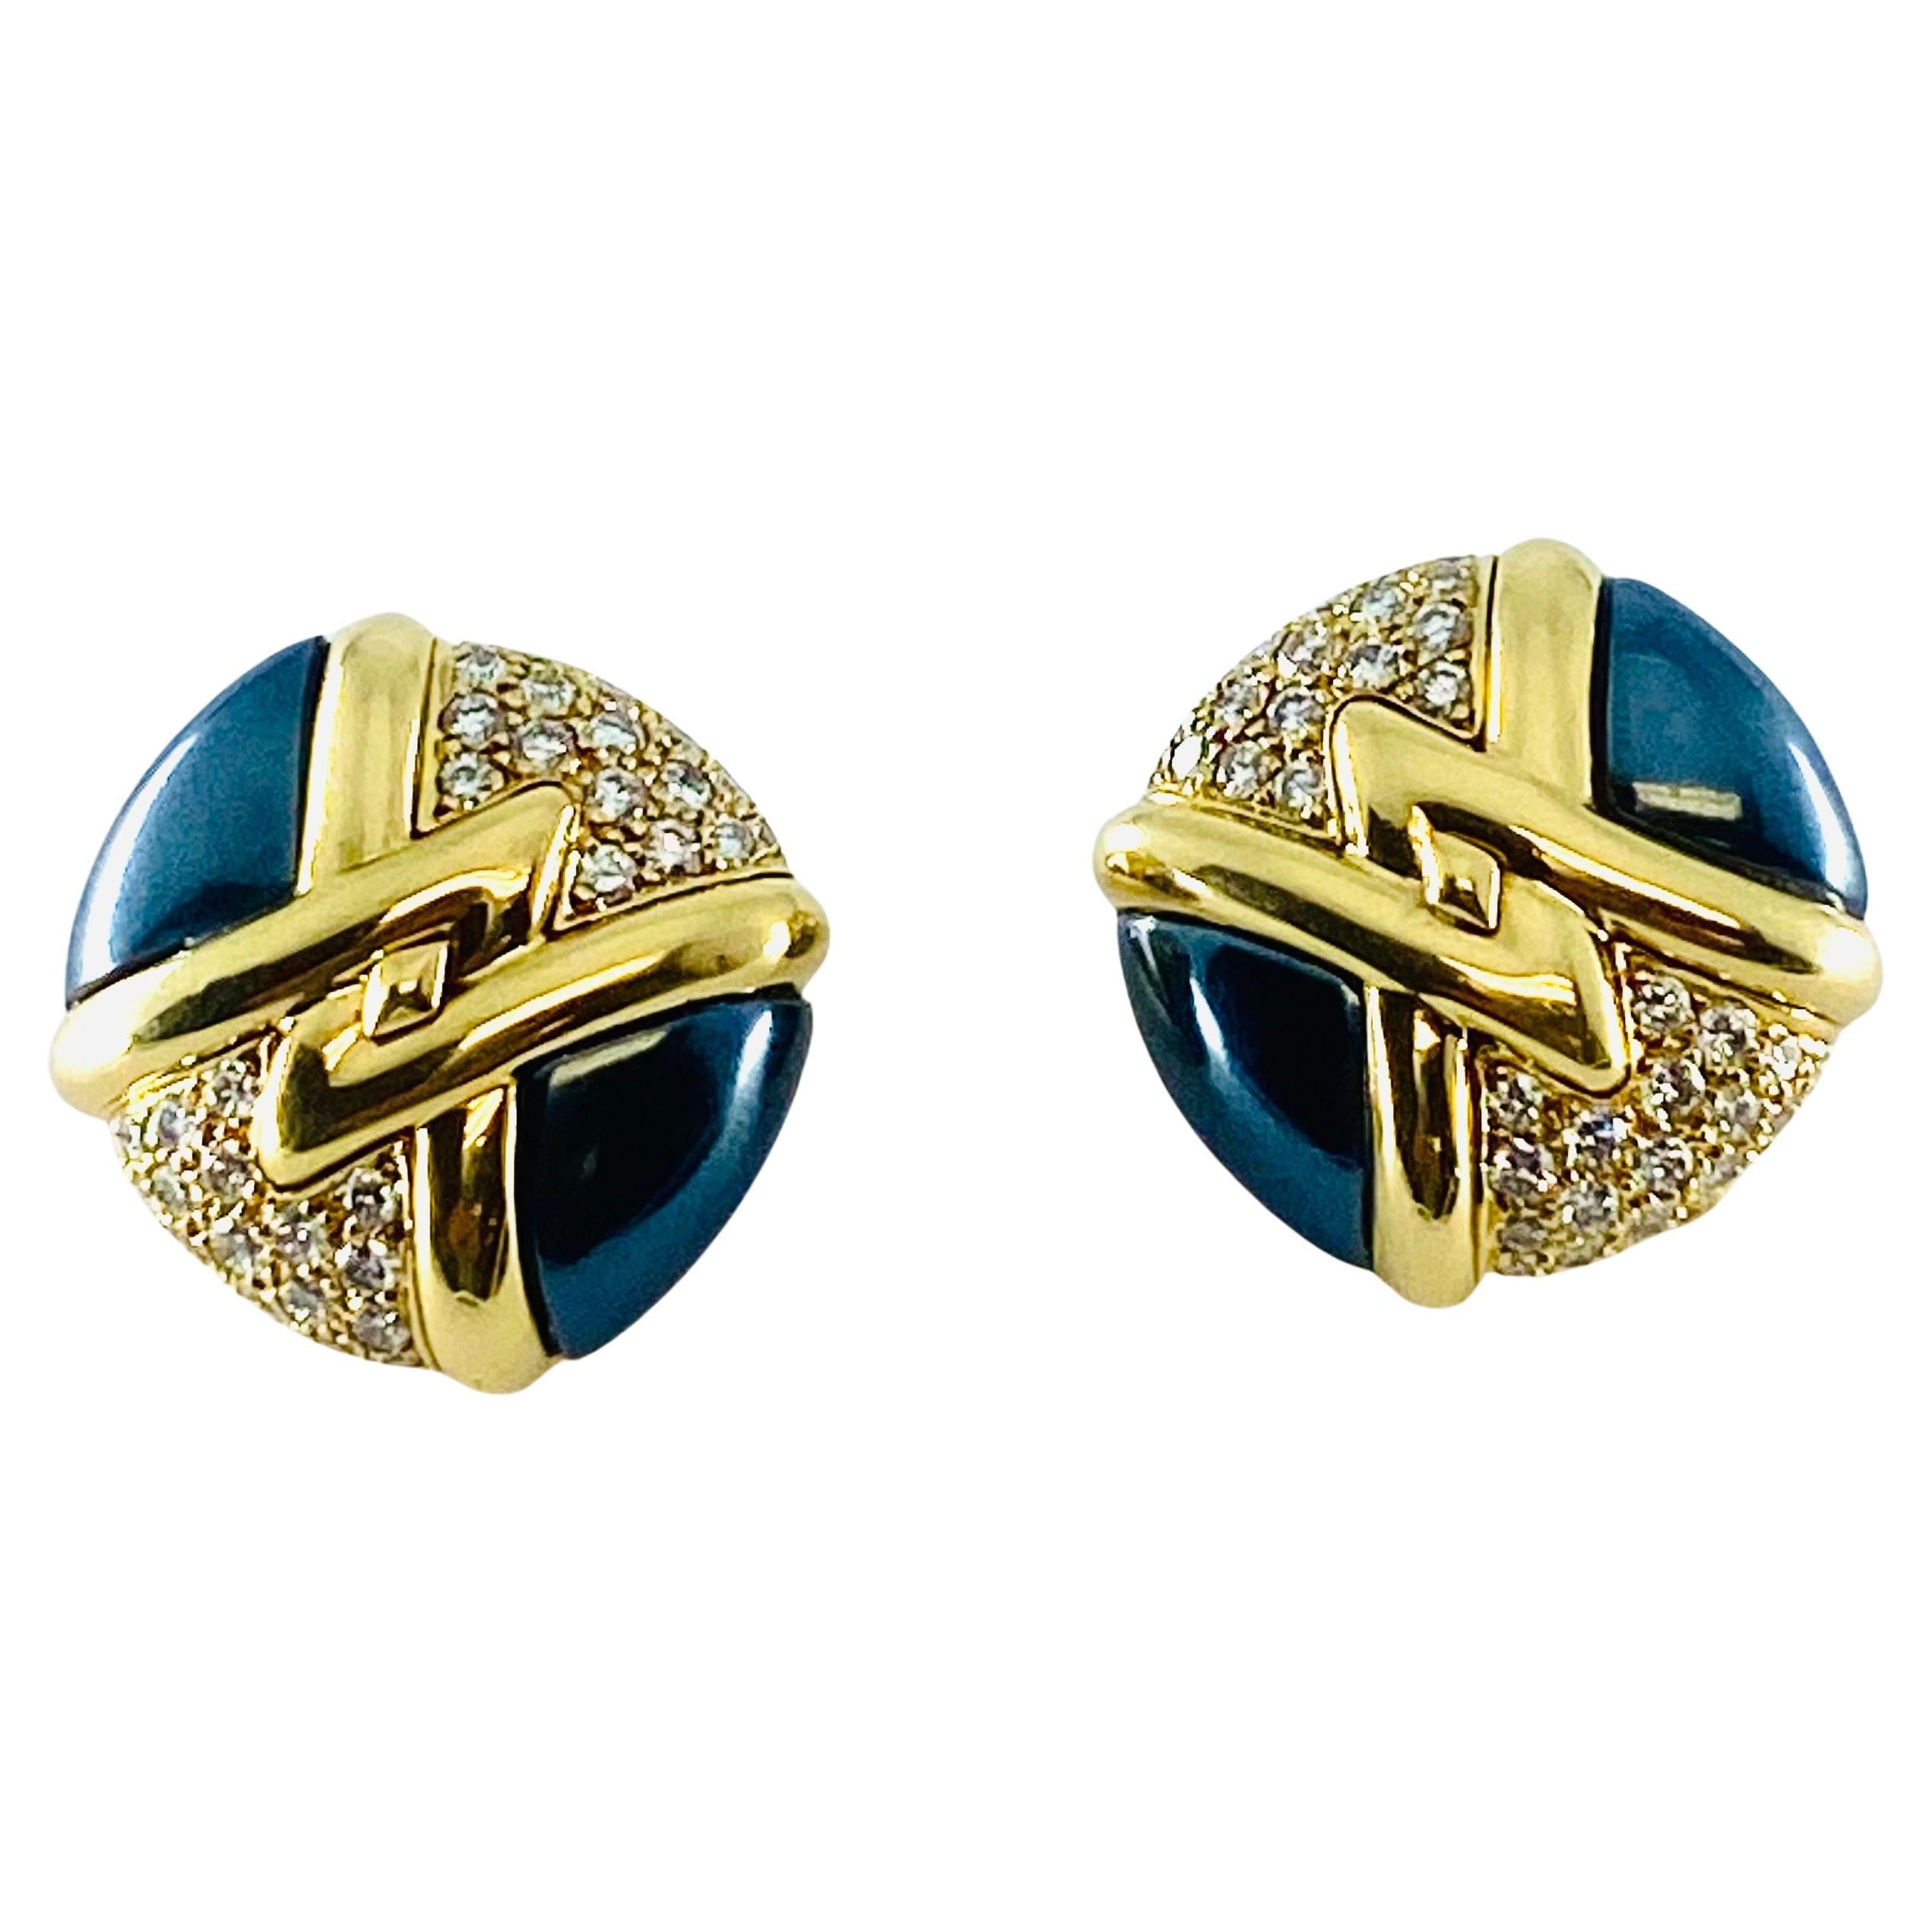  Bulgari Diamond Hematite 18K Gold Earrings  For Sale 2